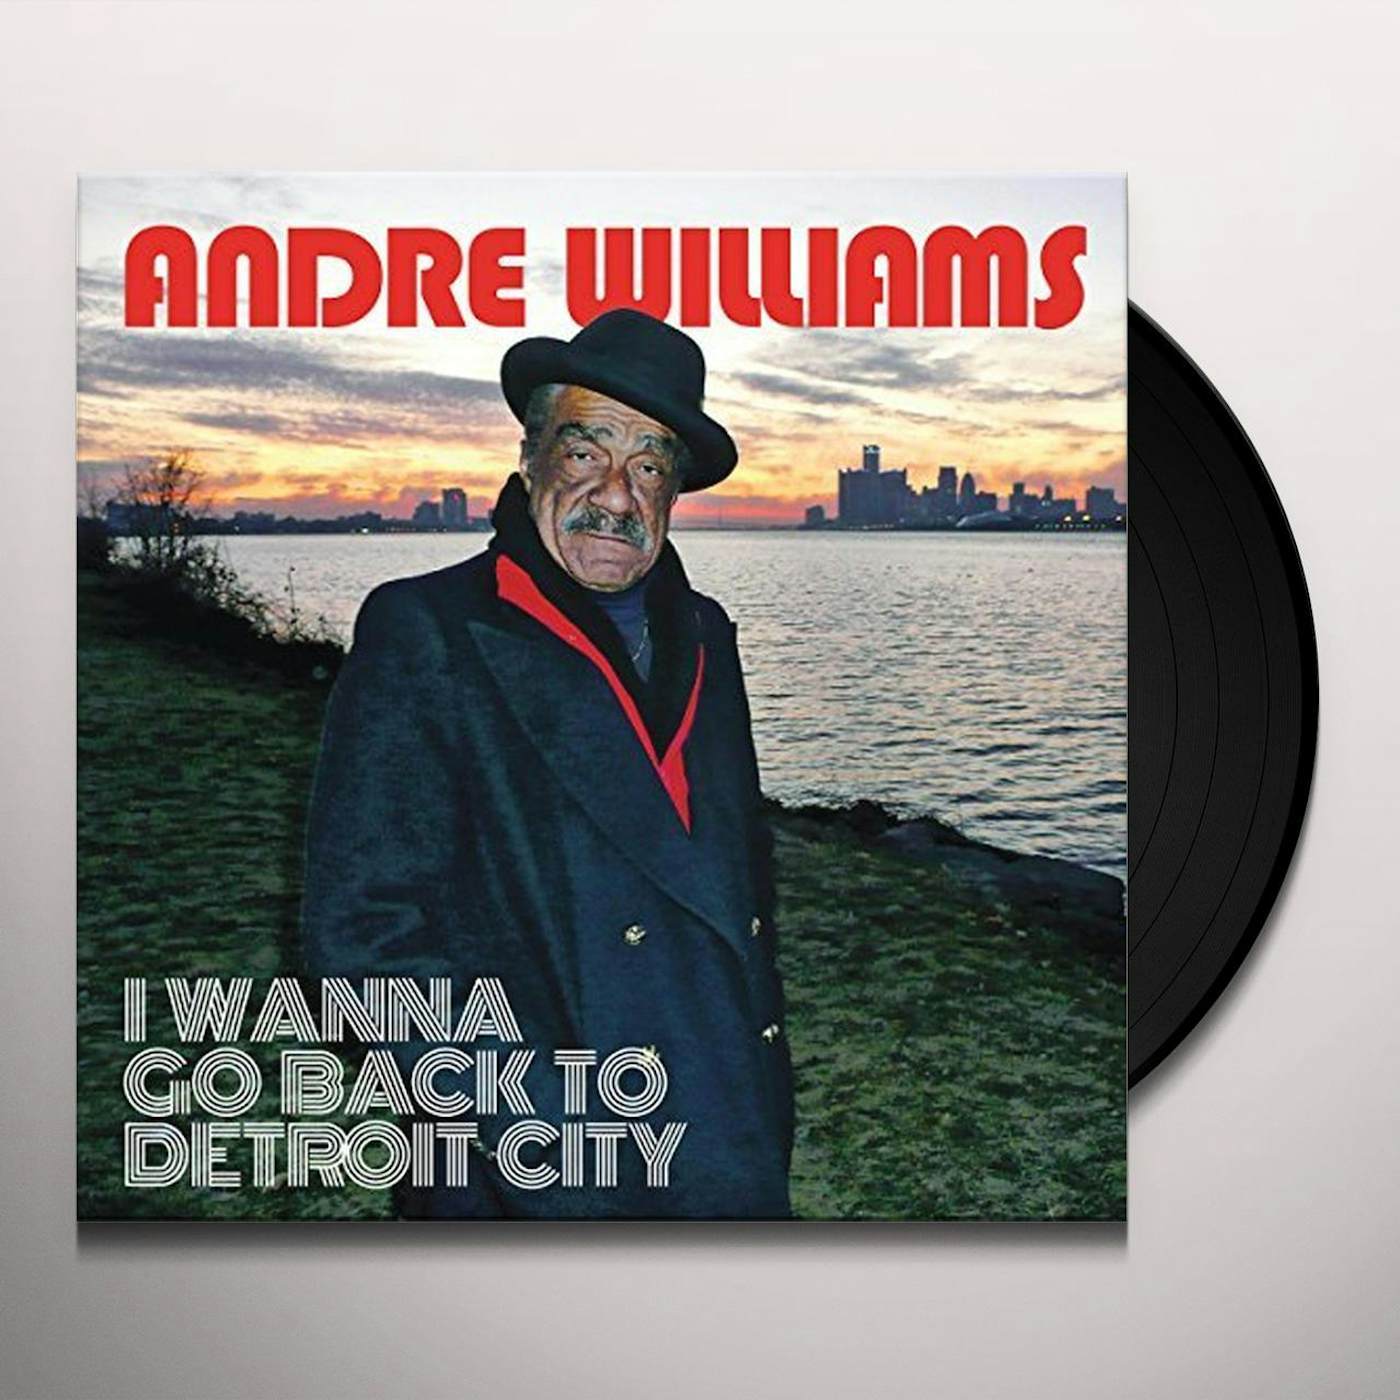 Andre Williams I Wanna Go Back To Detroit City Vinyl Record